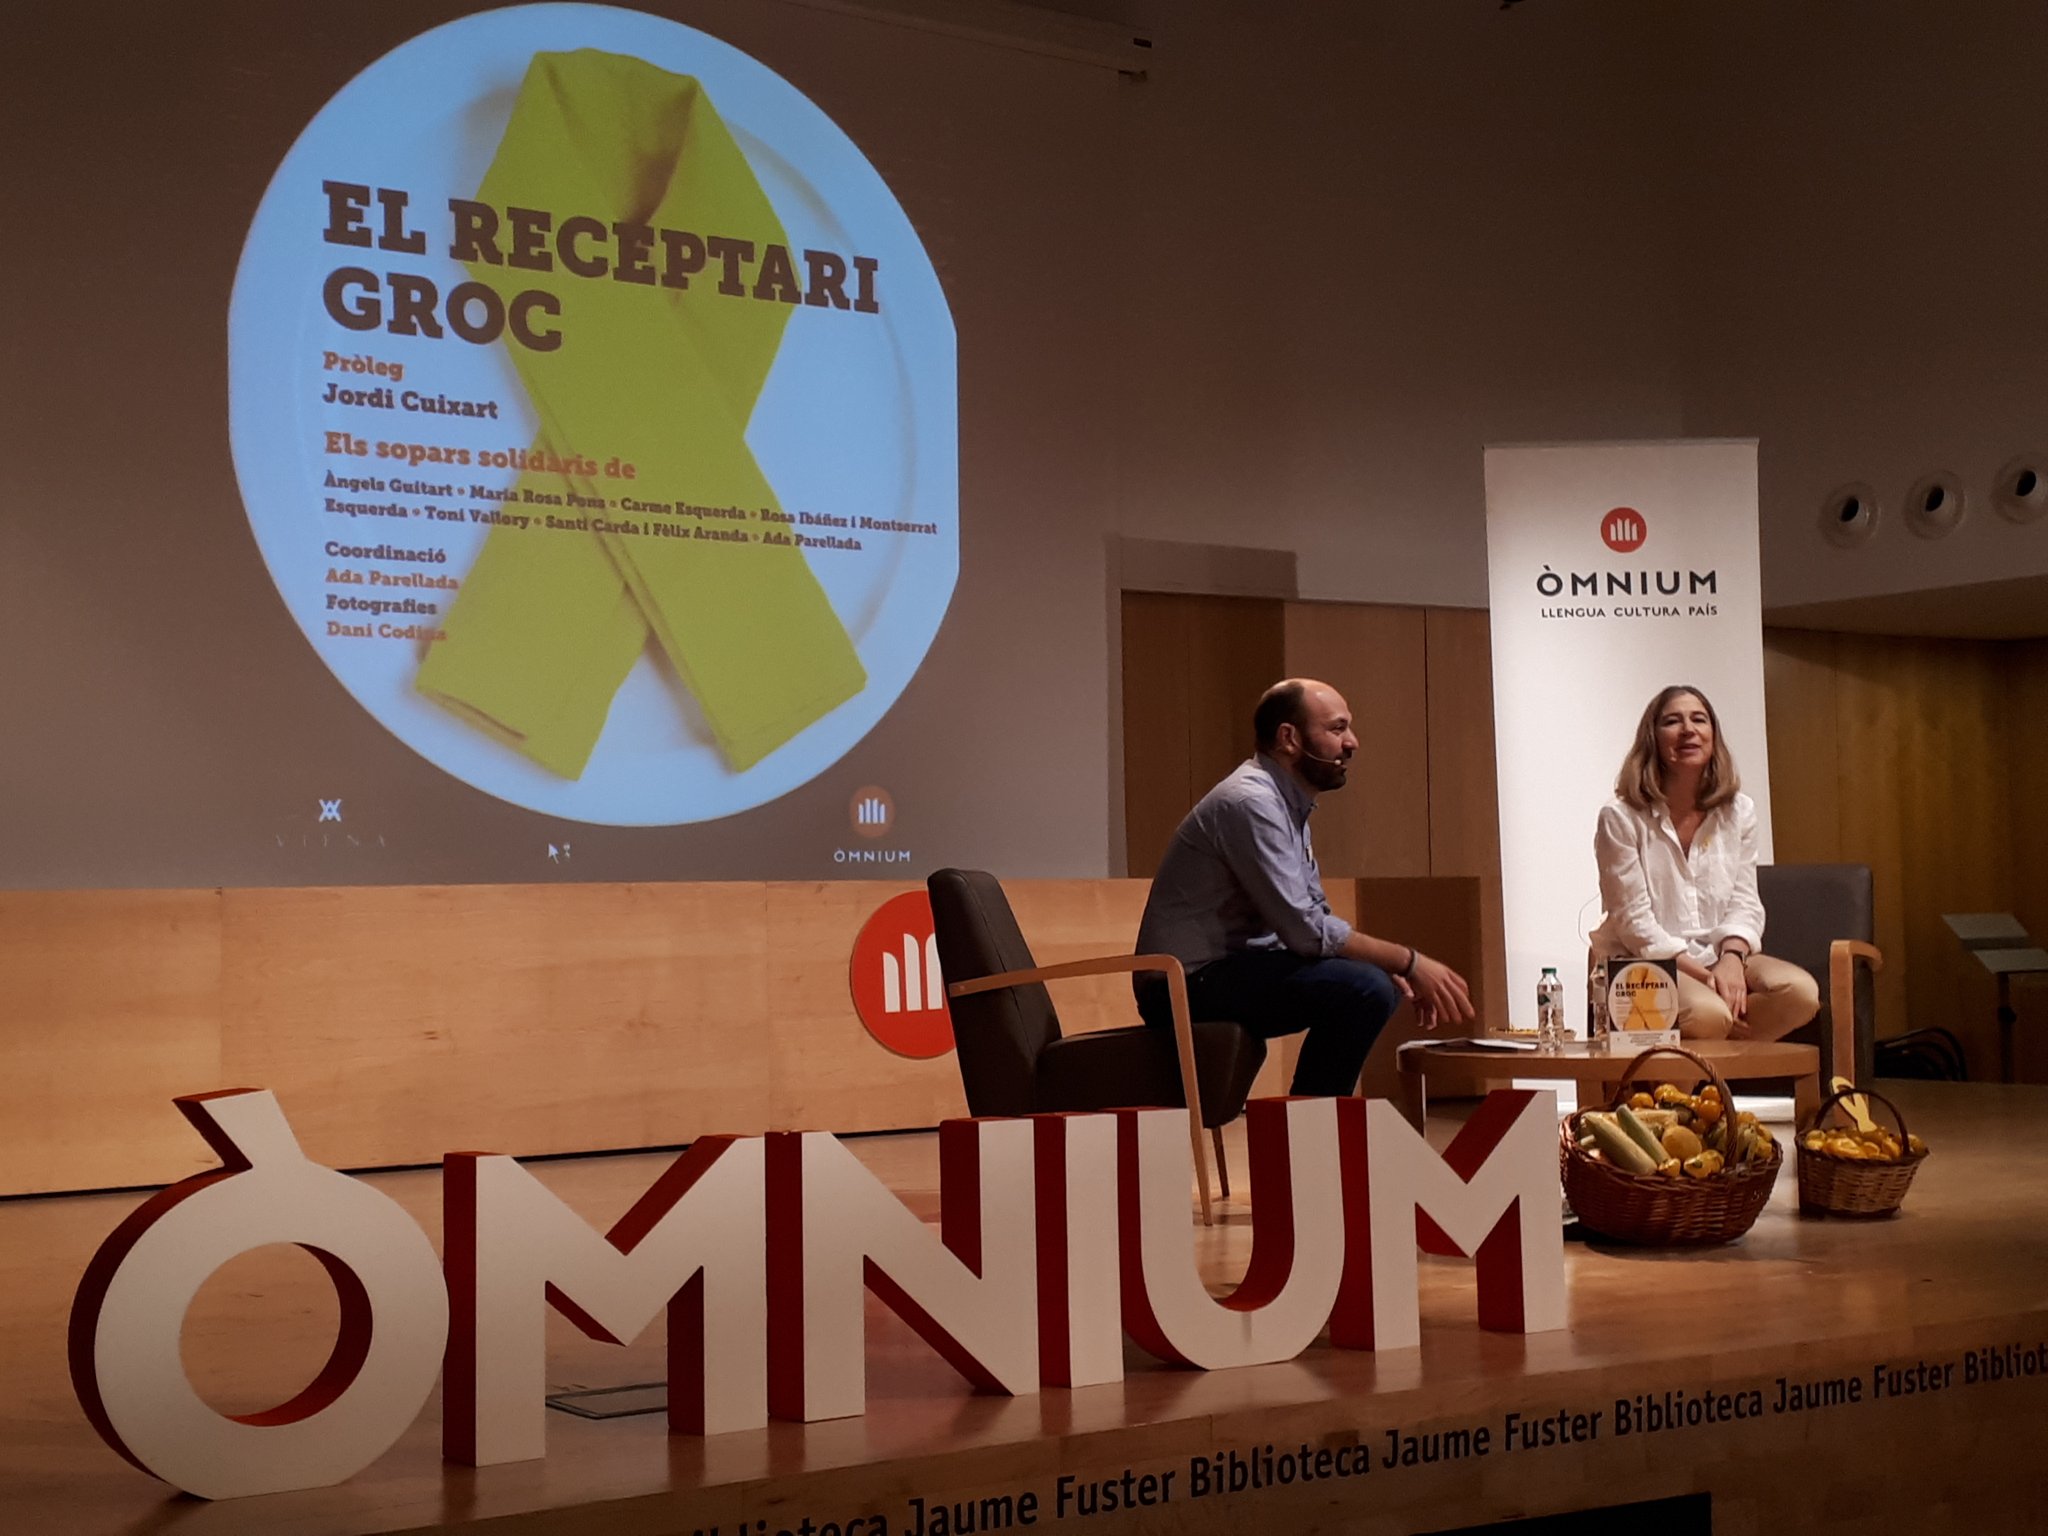 'El receptari groc': Ada Parellada i el món de la cuina, amb els presos polítics